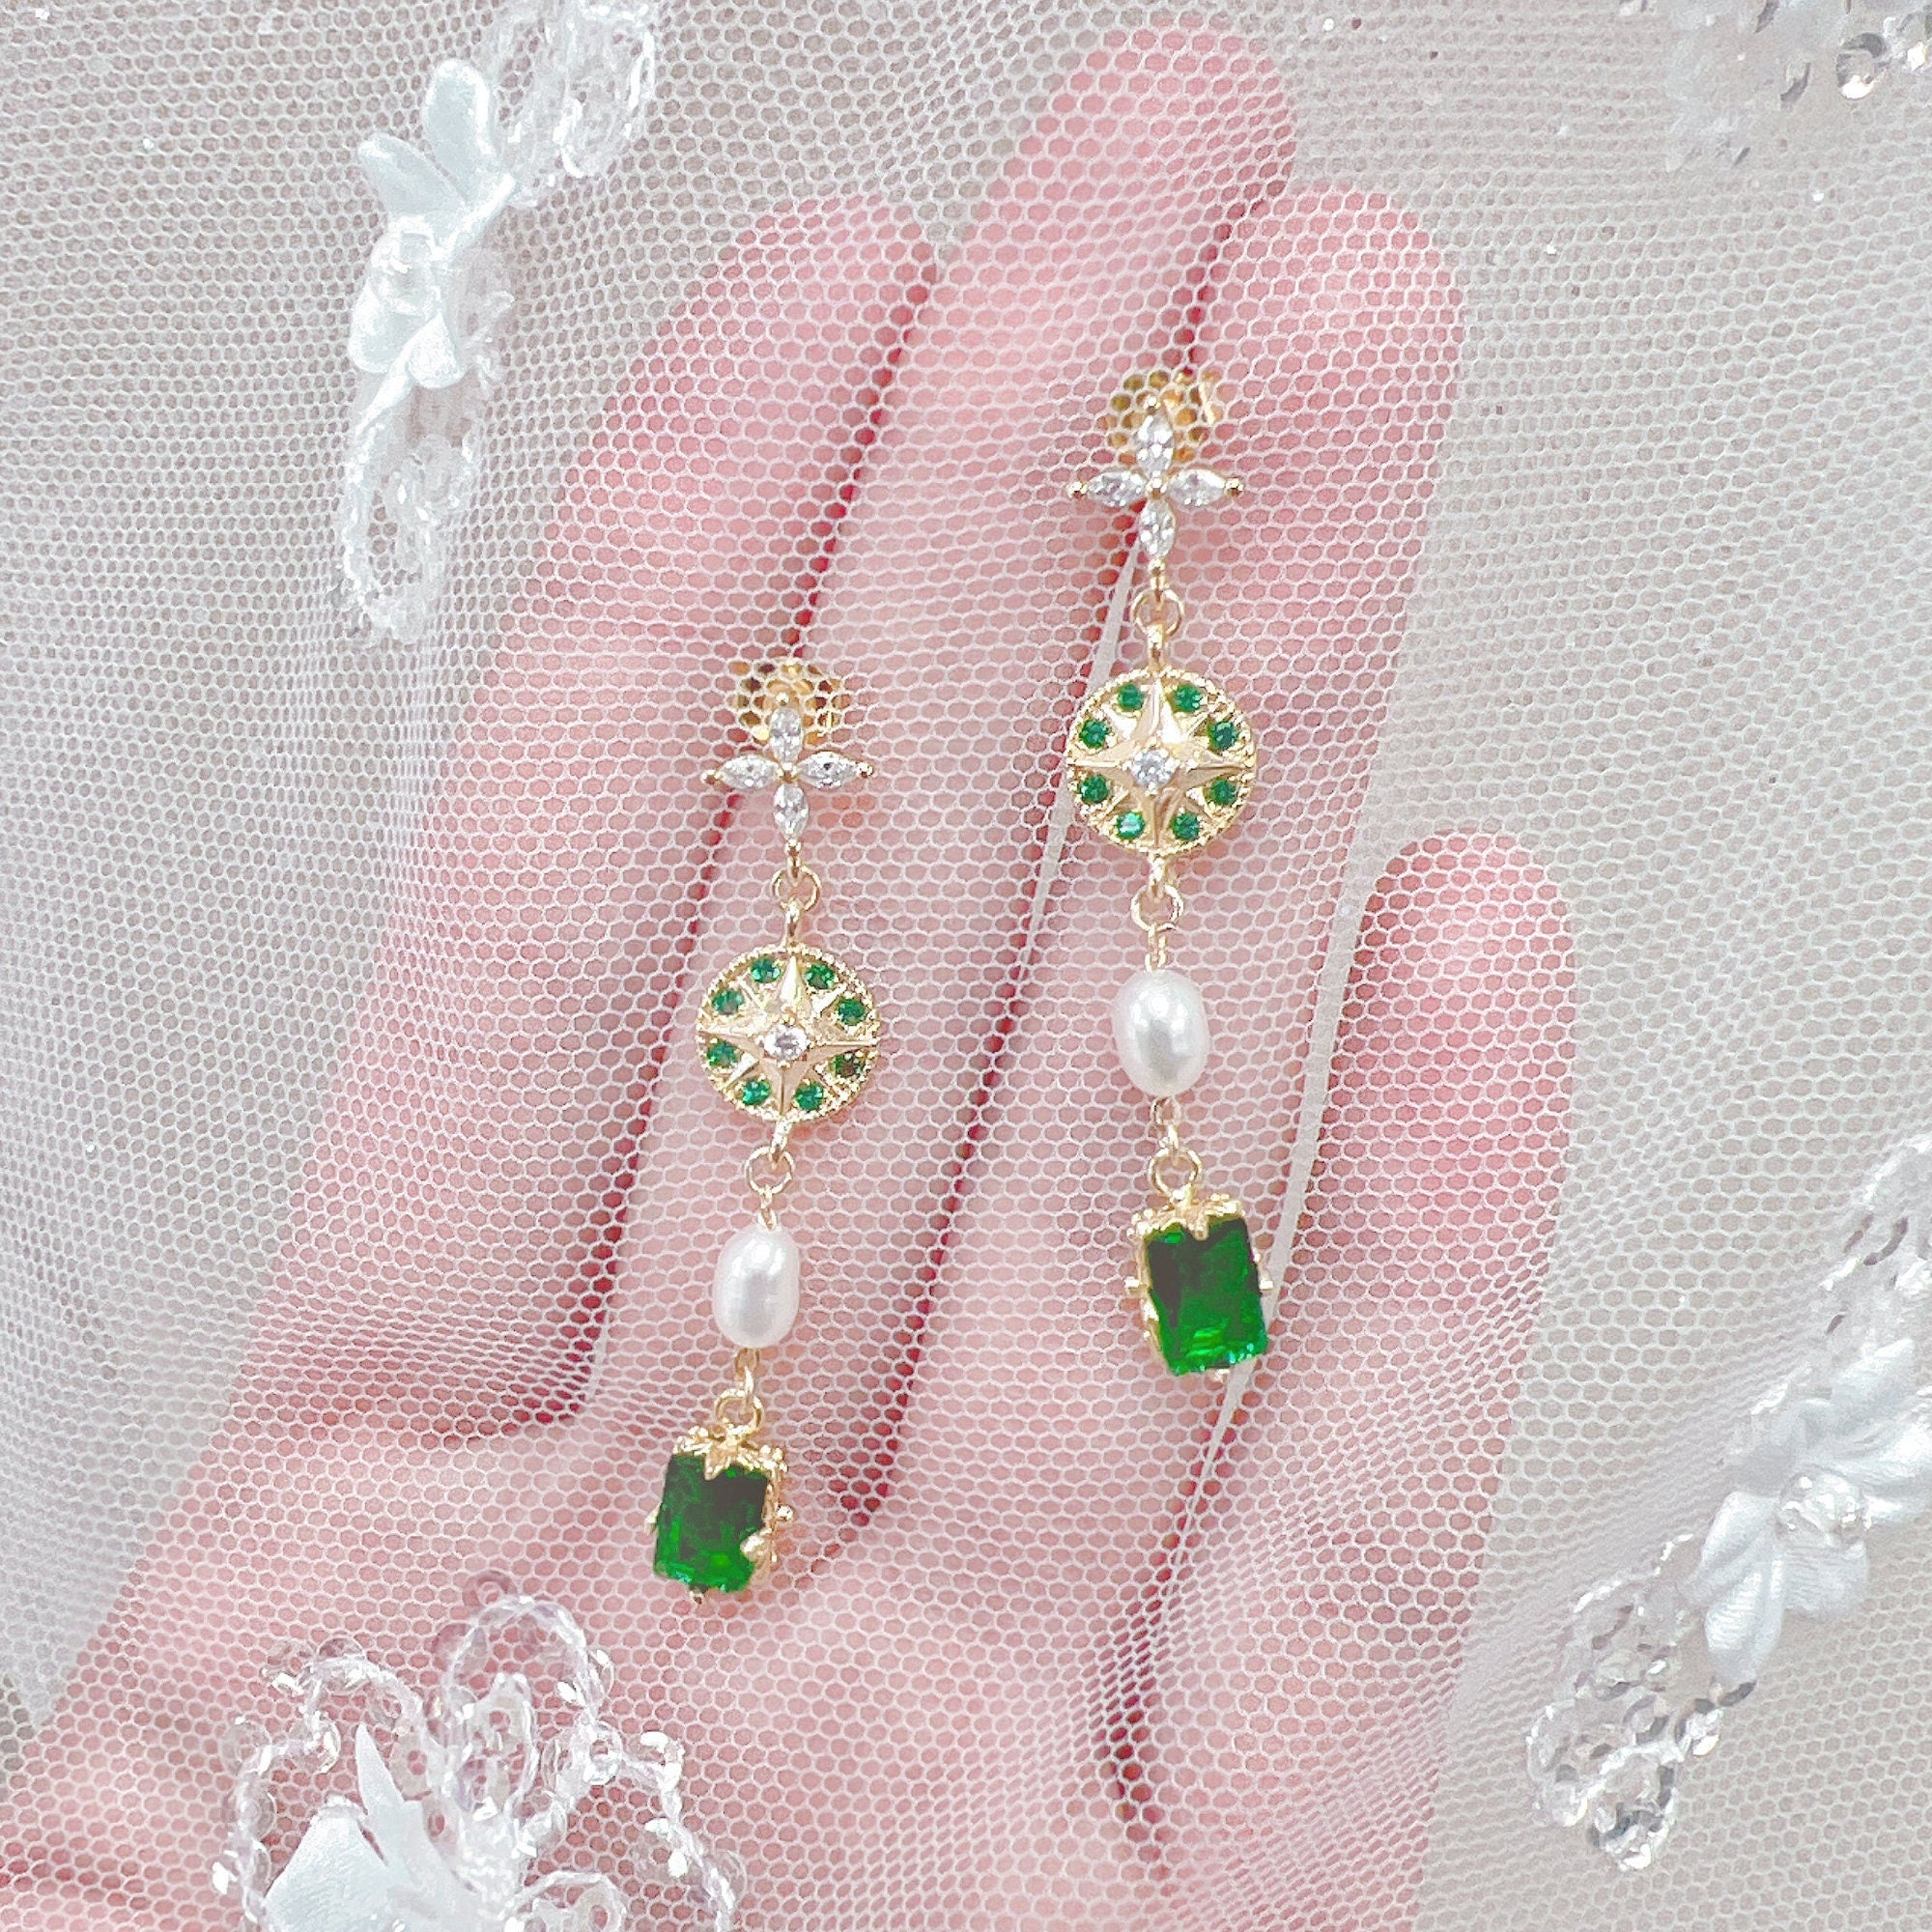 Emerald Green Wedding Earrings